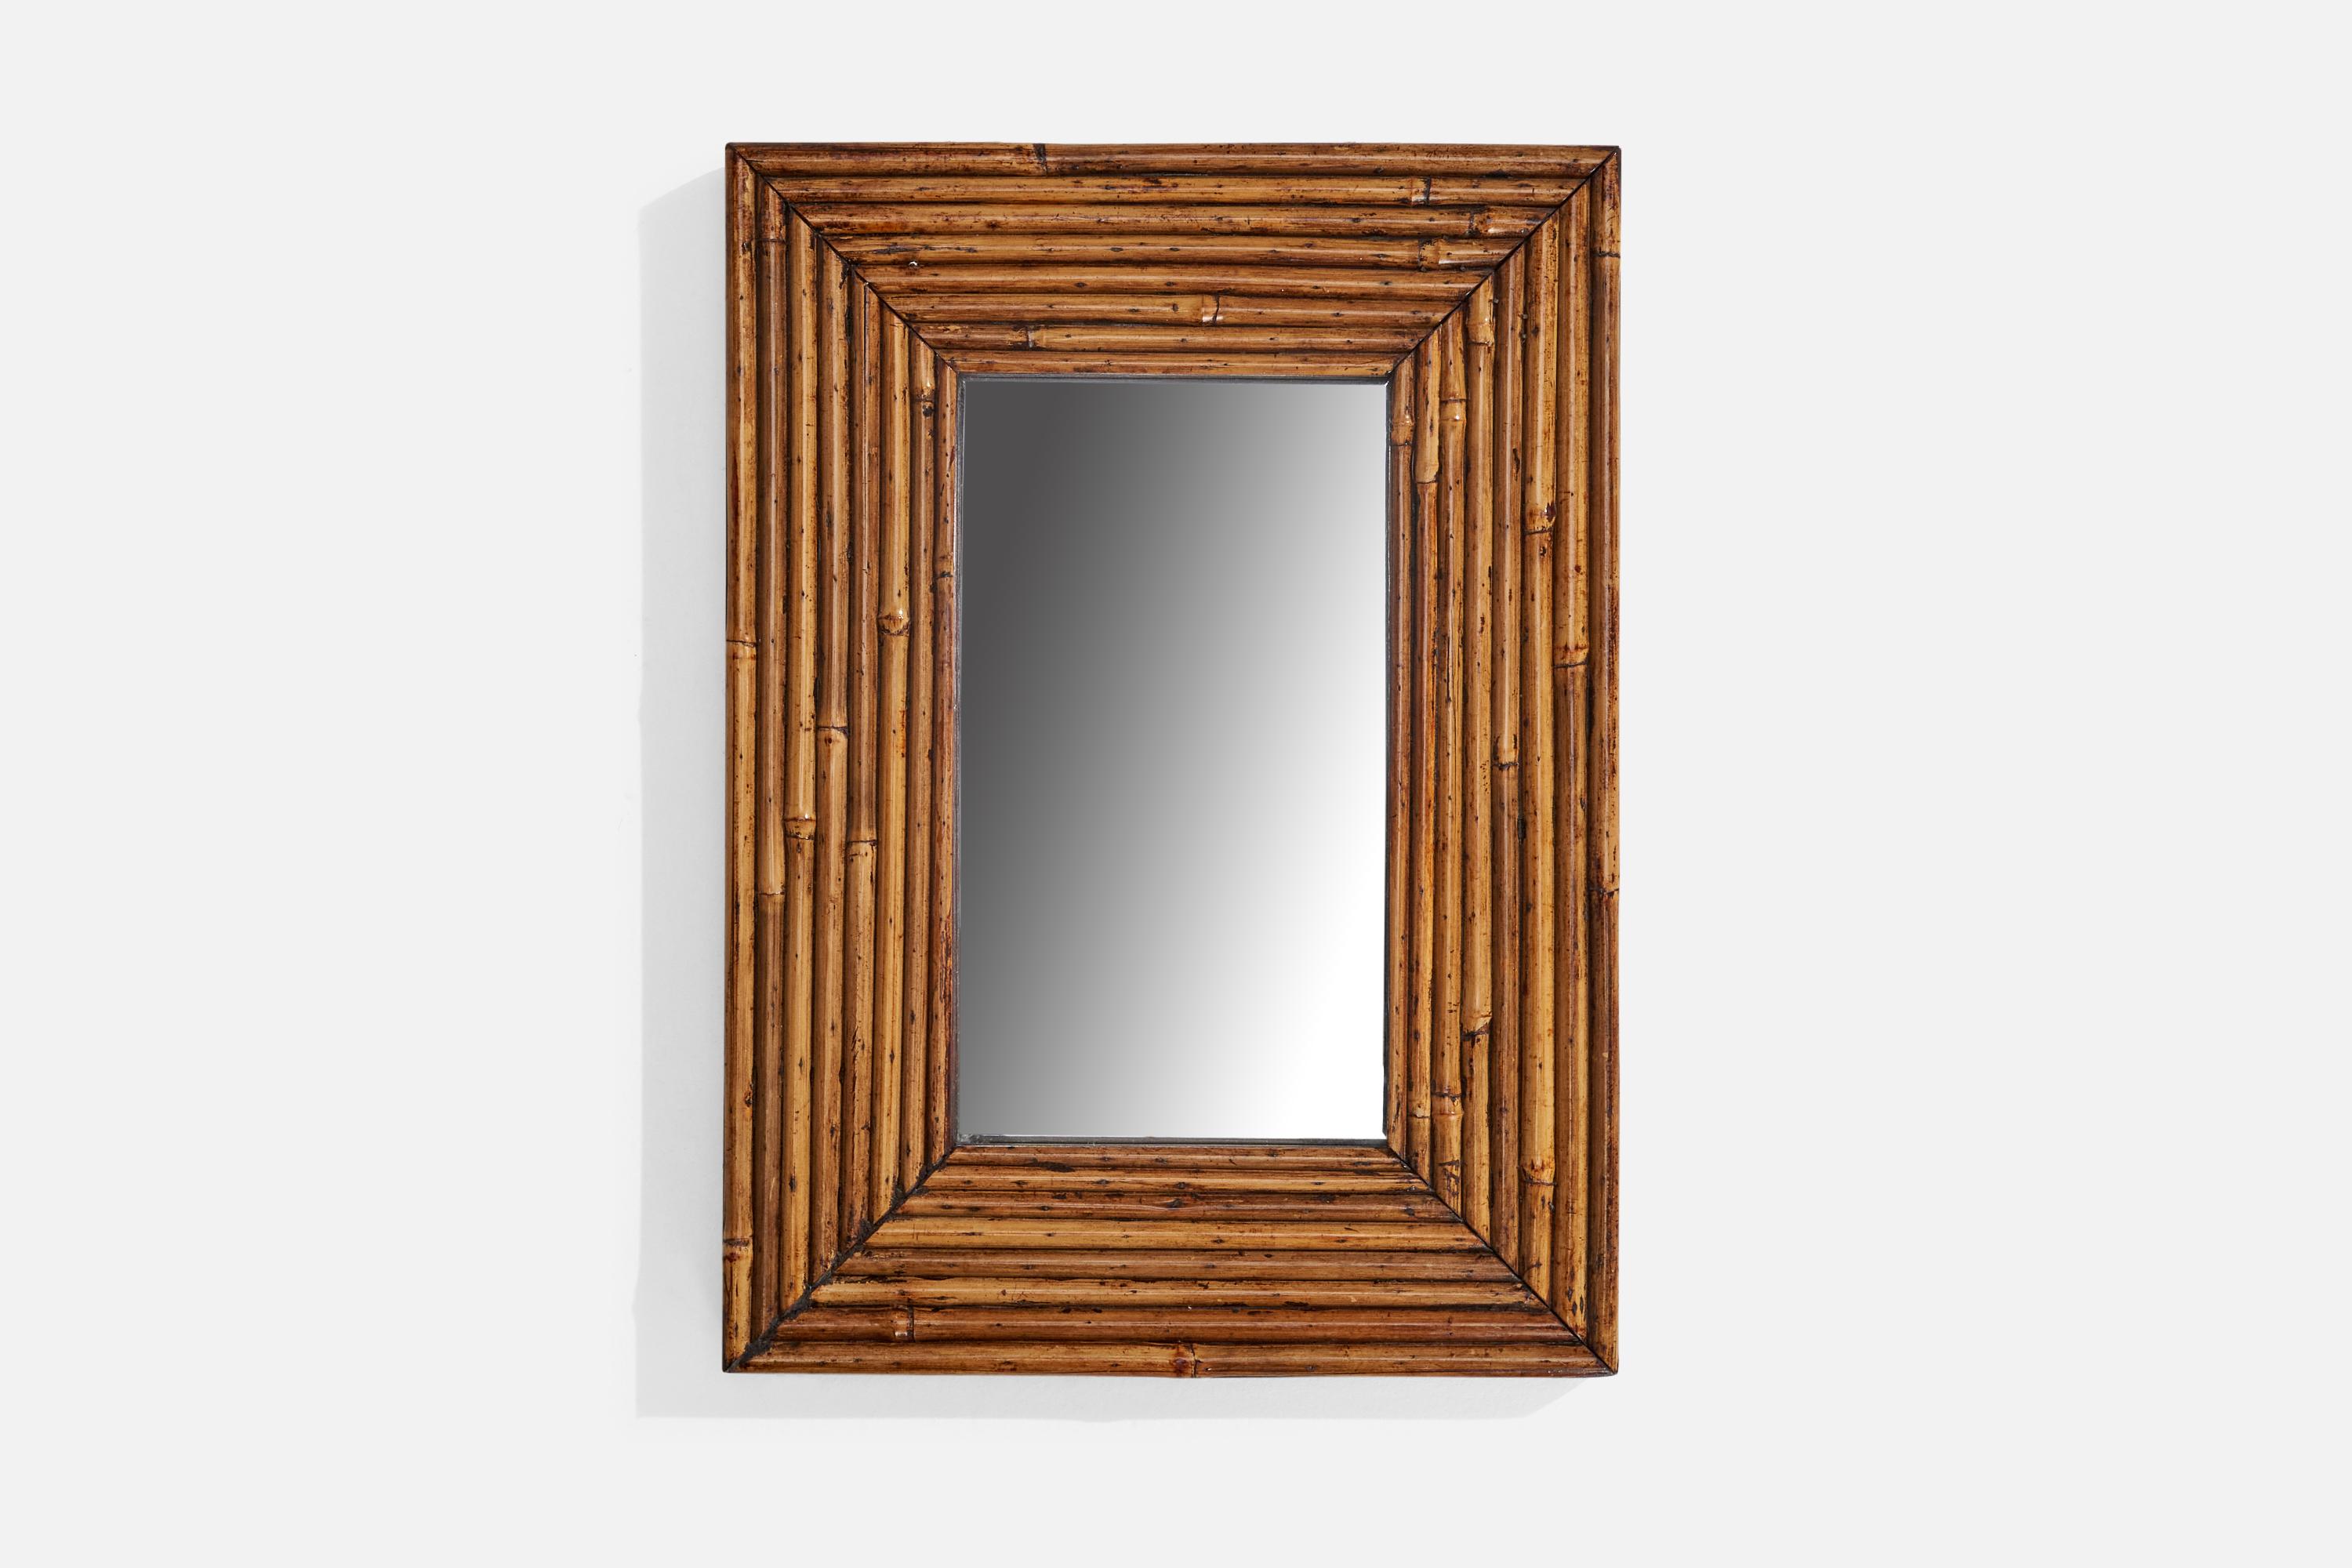 Spiegel aus Bambus und dunkel gebeiztem Holz, entworfen und hergestellt in Italien, ca. 1950er Jahre.